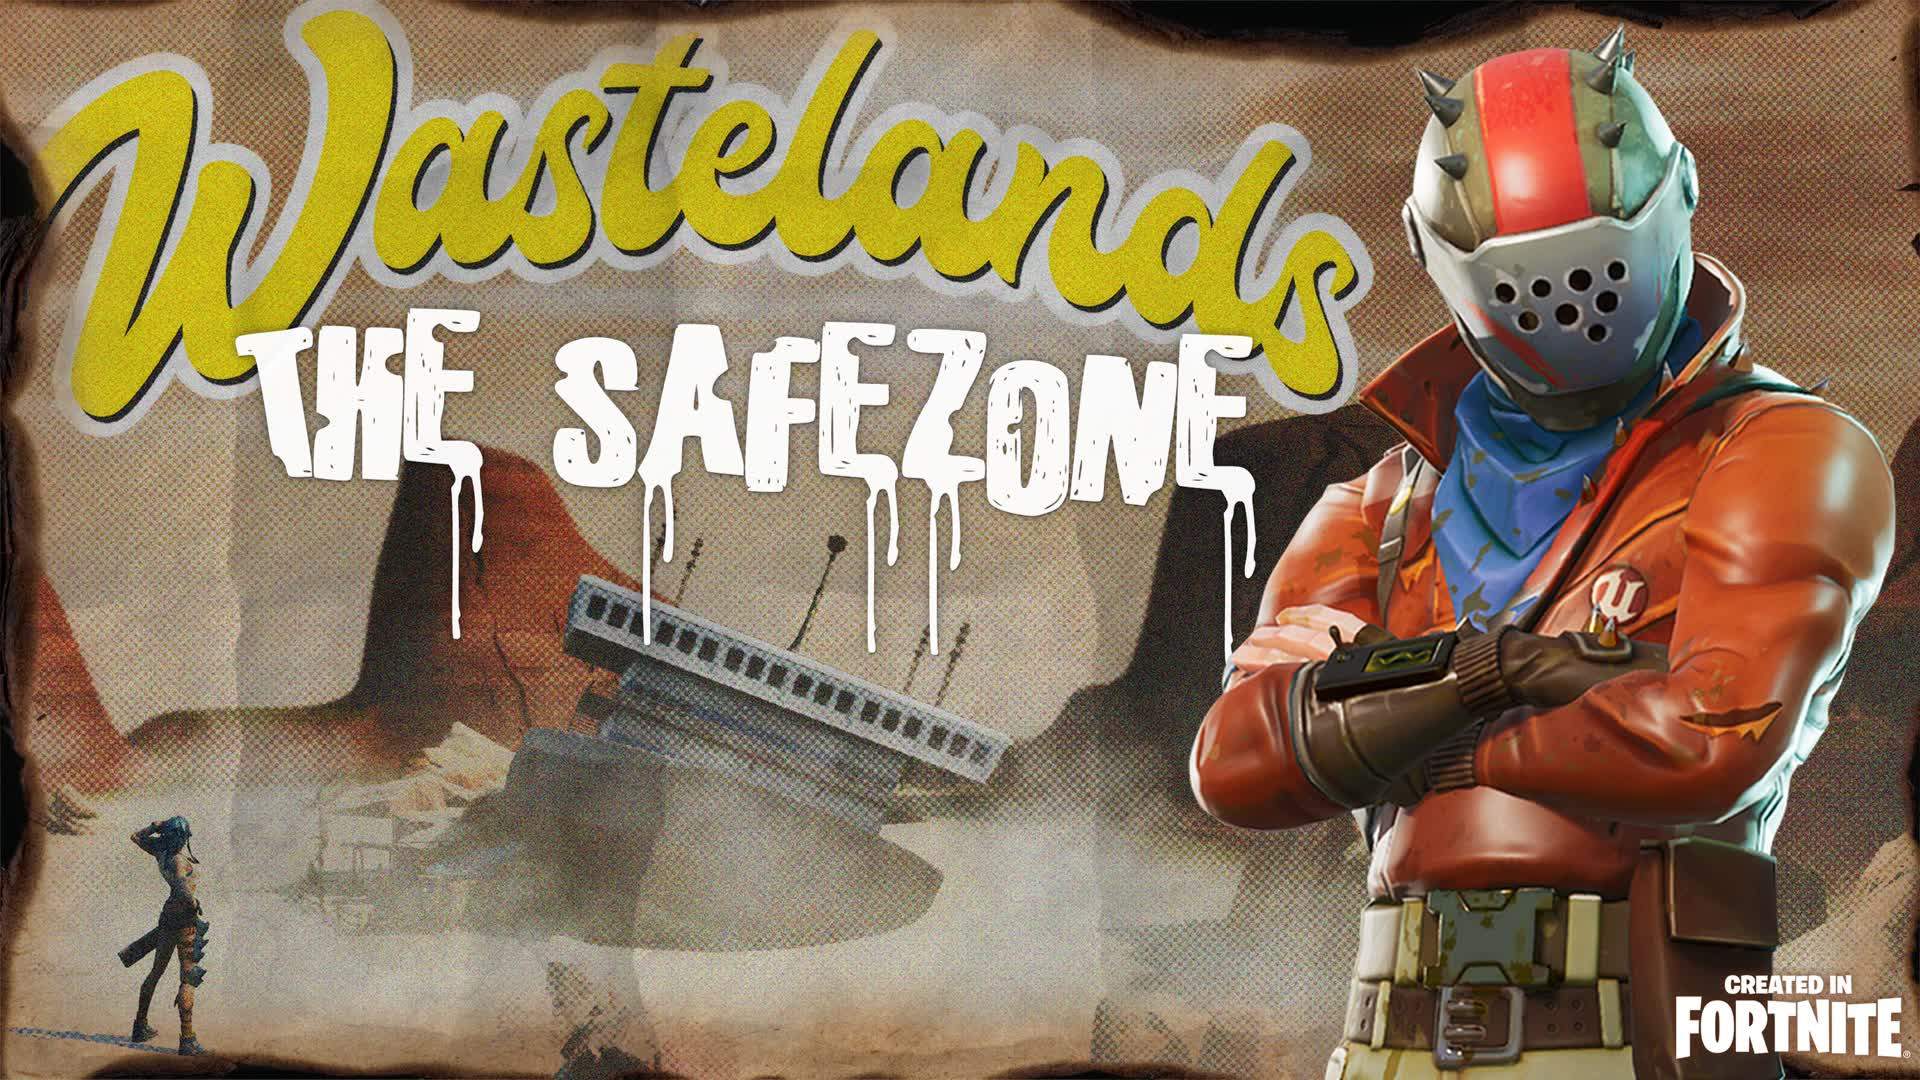 Wastelands: The Safezone